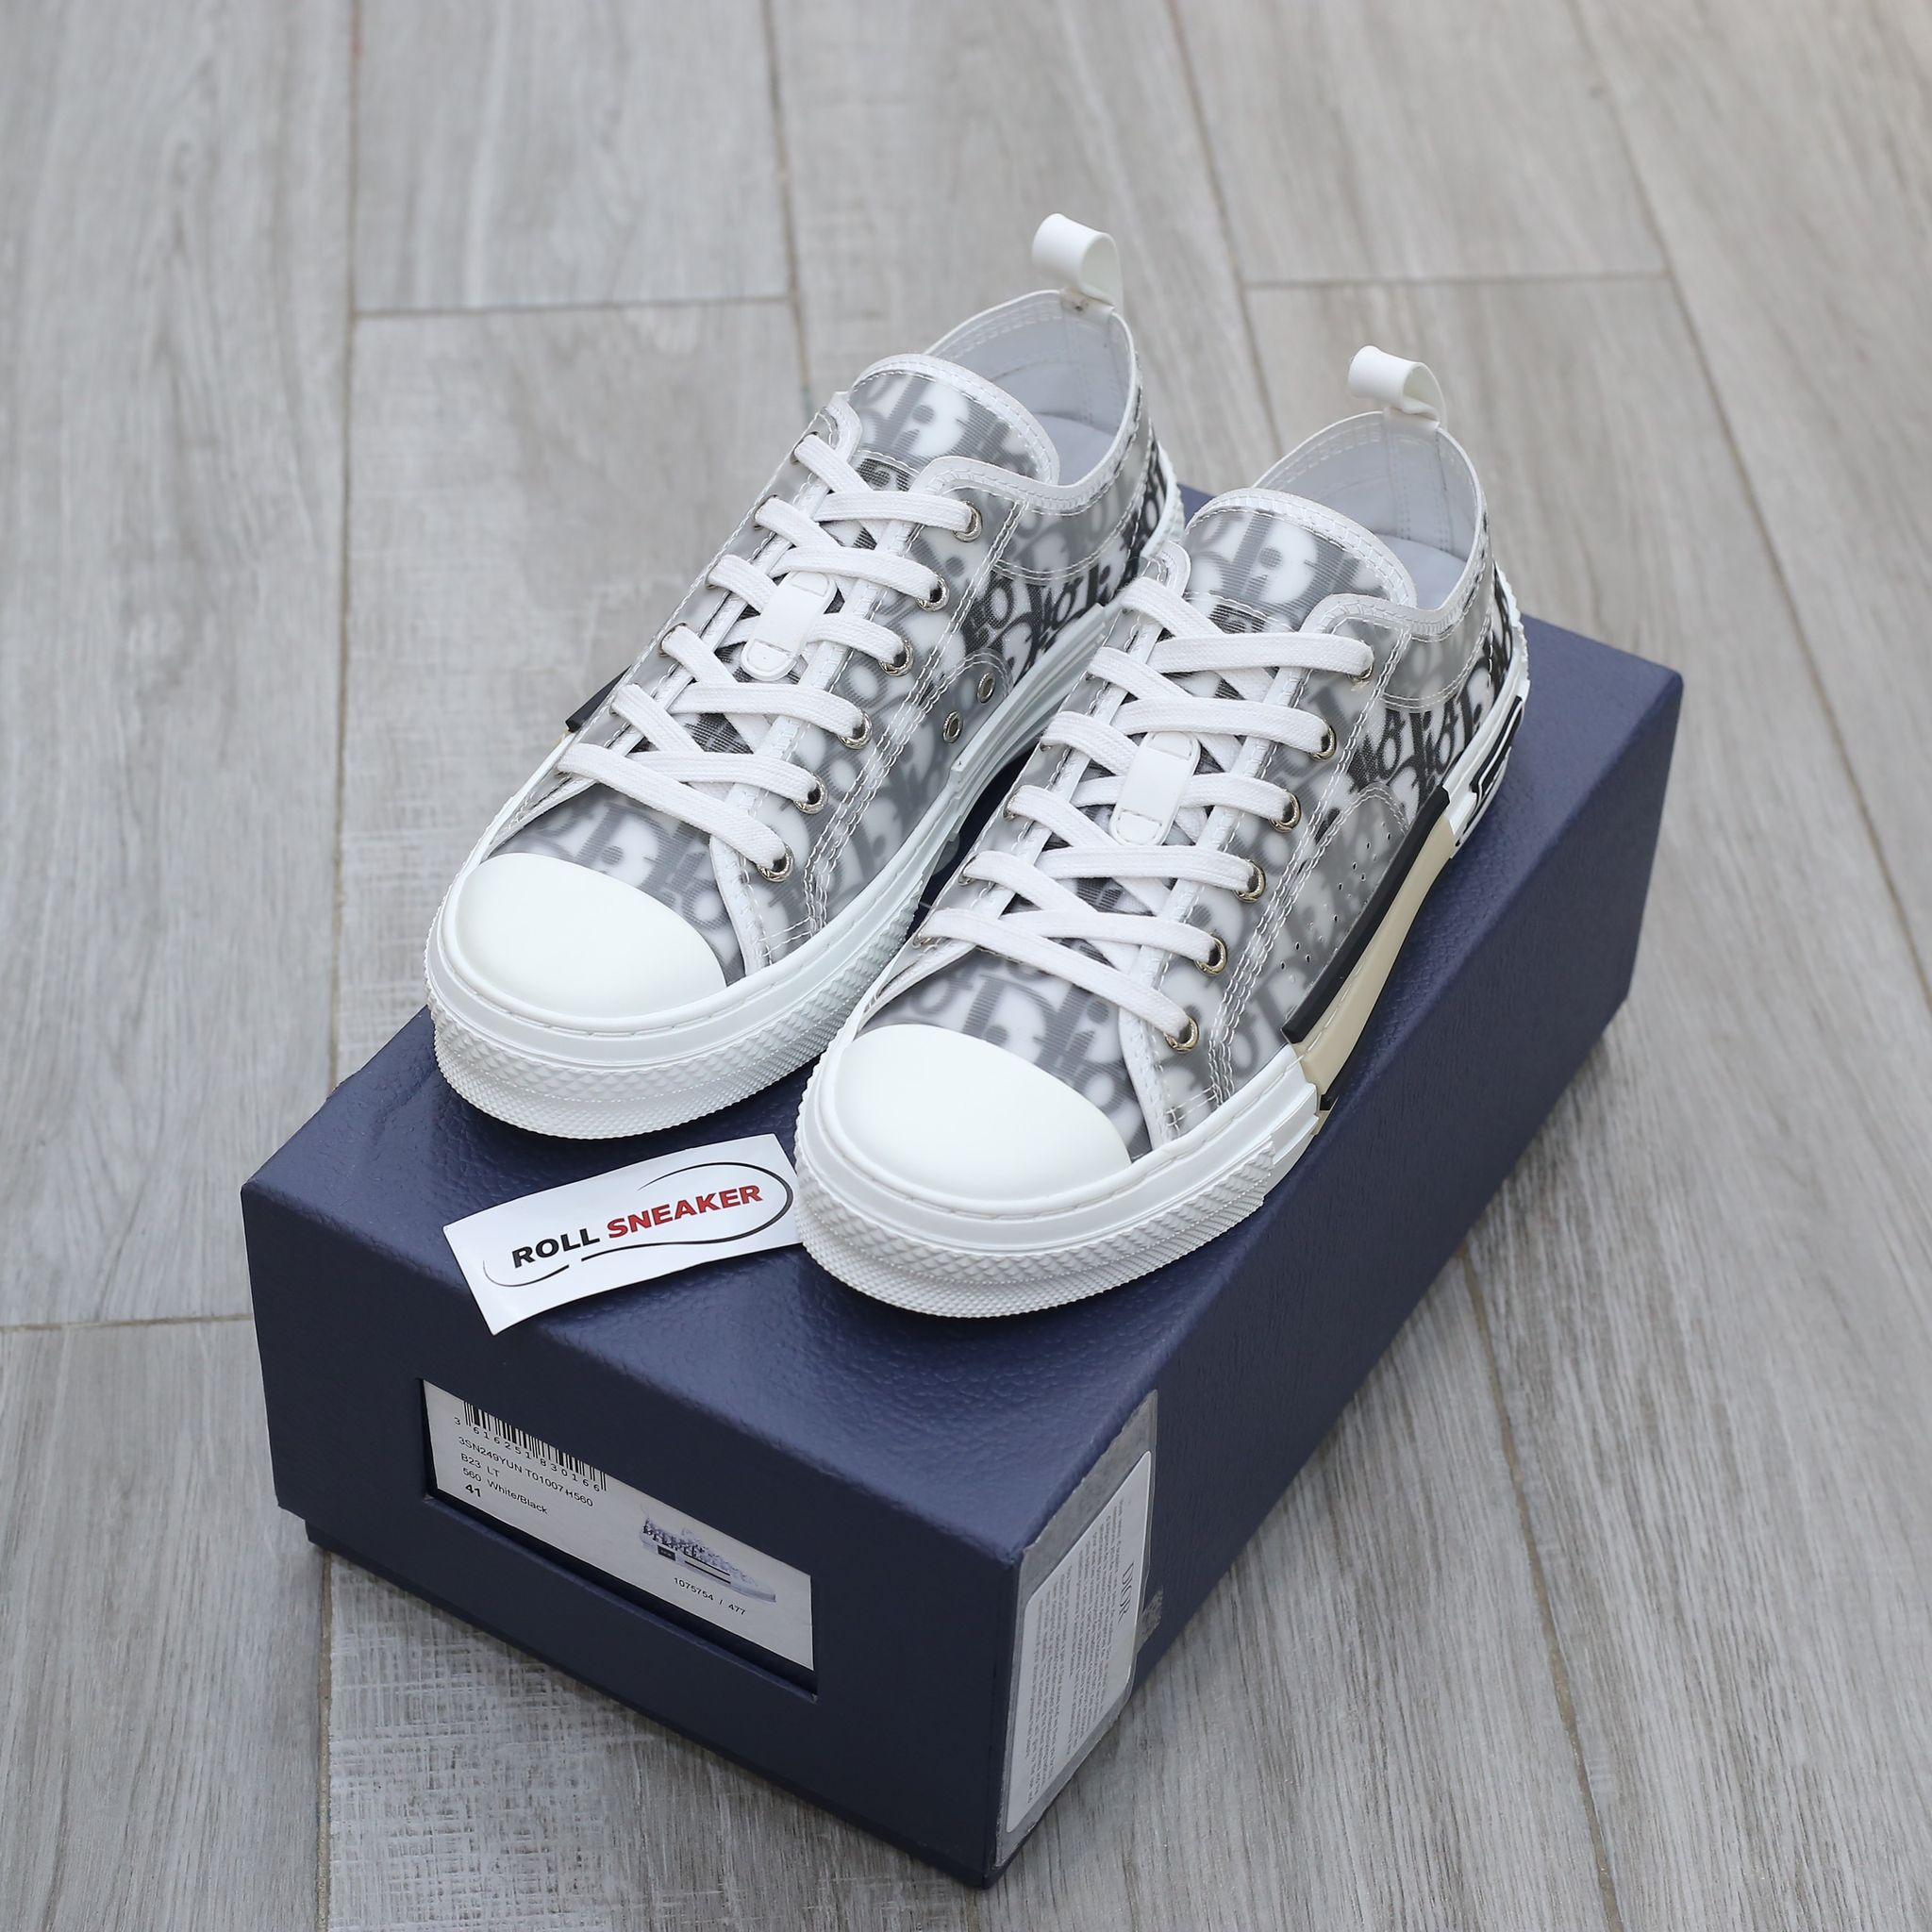 Giày Converse x Dior Rep 11  Bộ sưu tập giày độc tại HS Sneaker